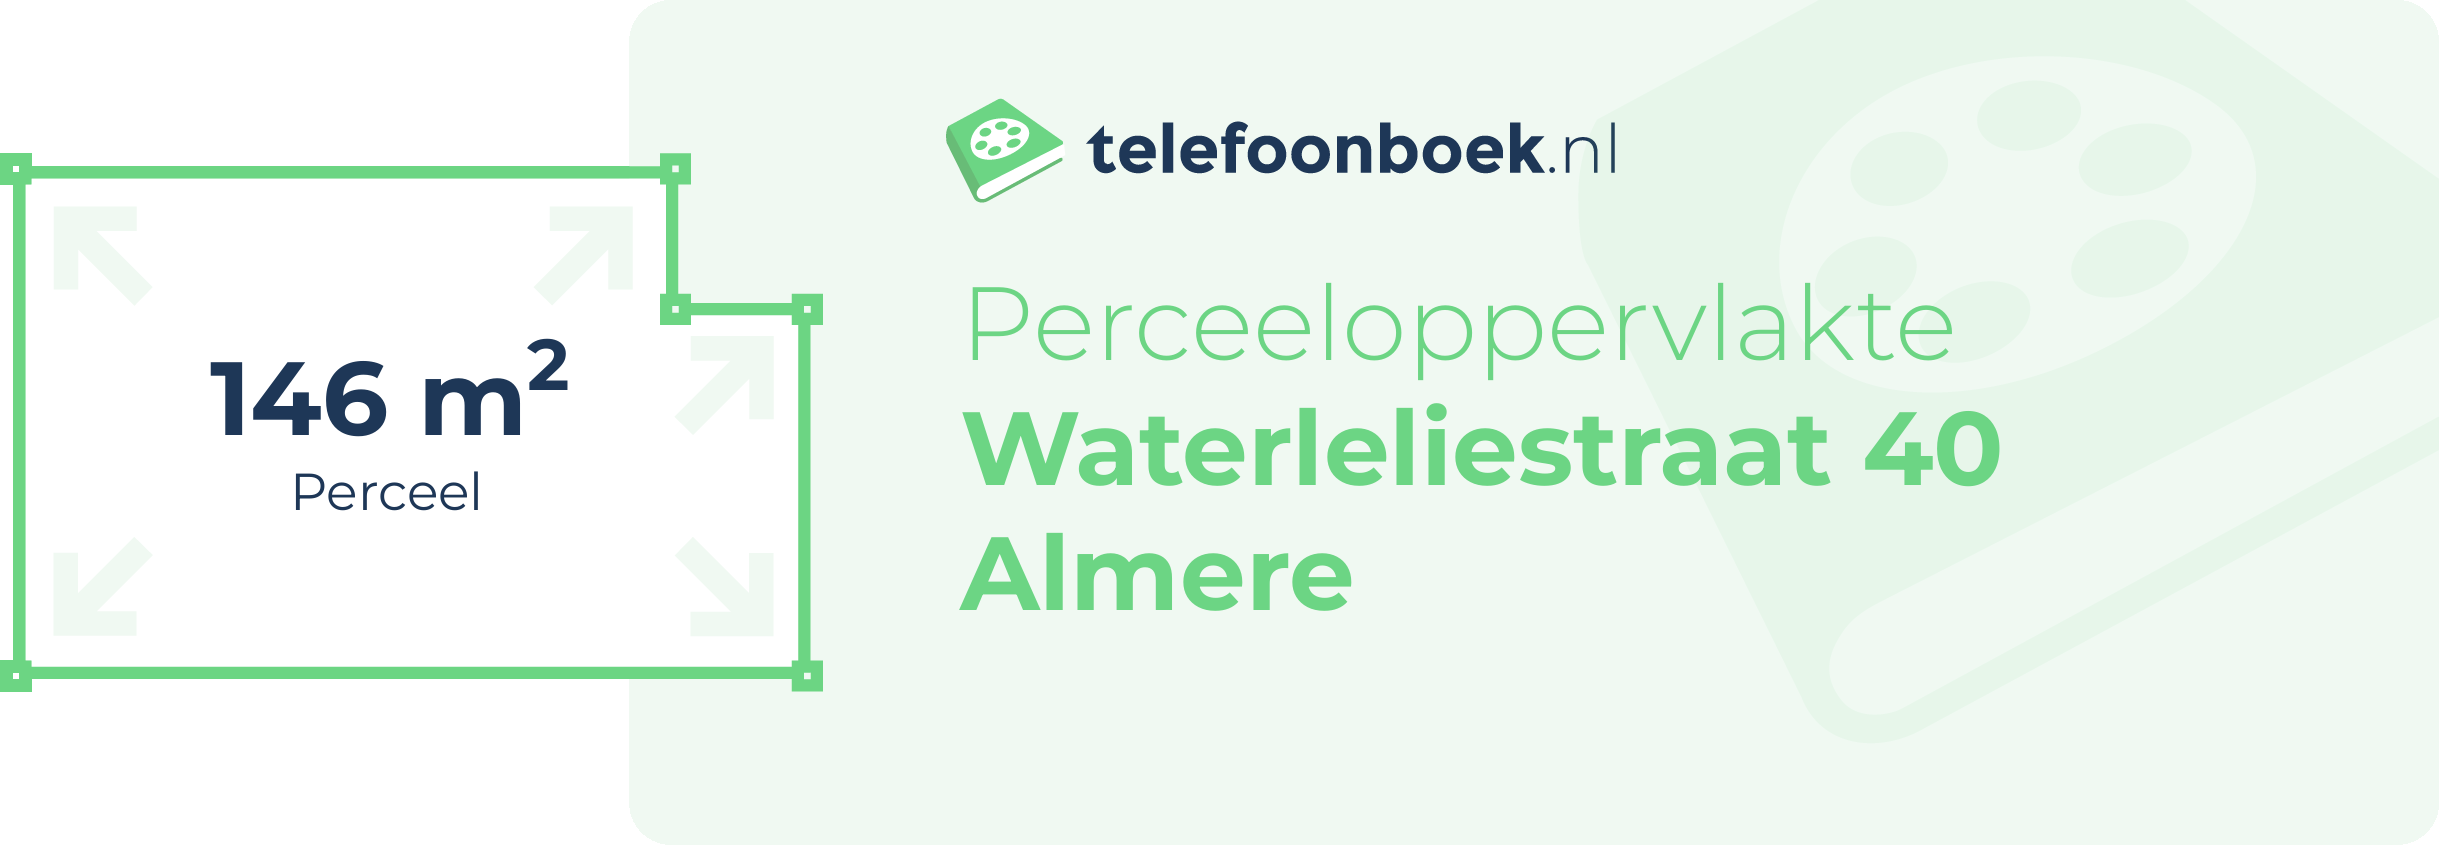 Perceeloppervlakte Waterleliestraat 40 Almere